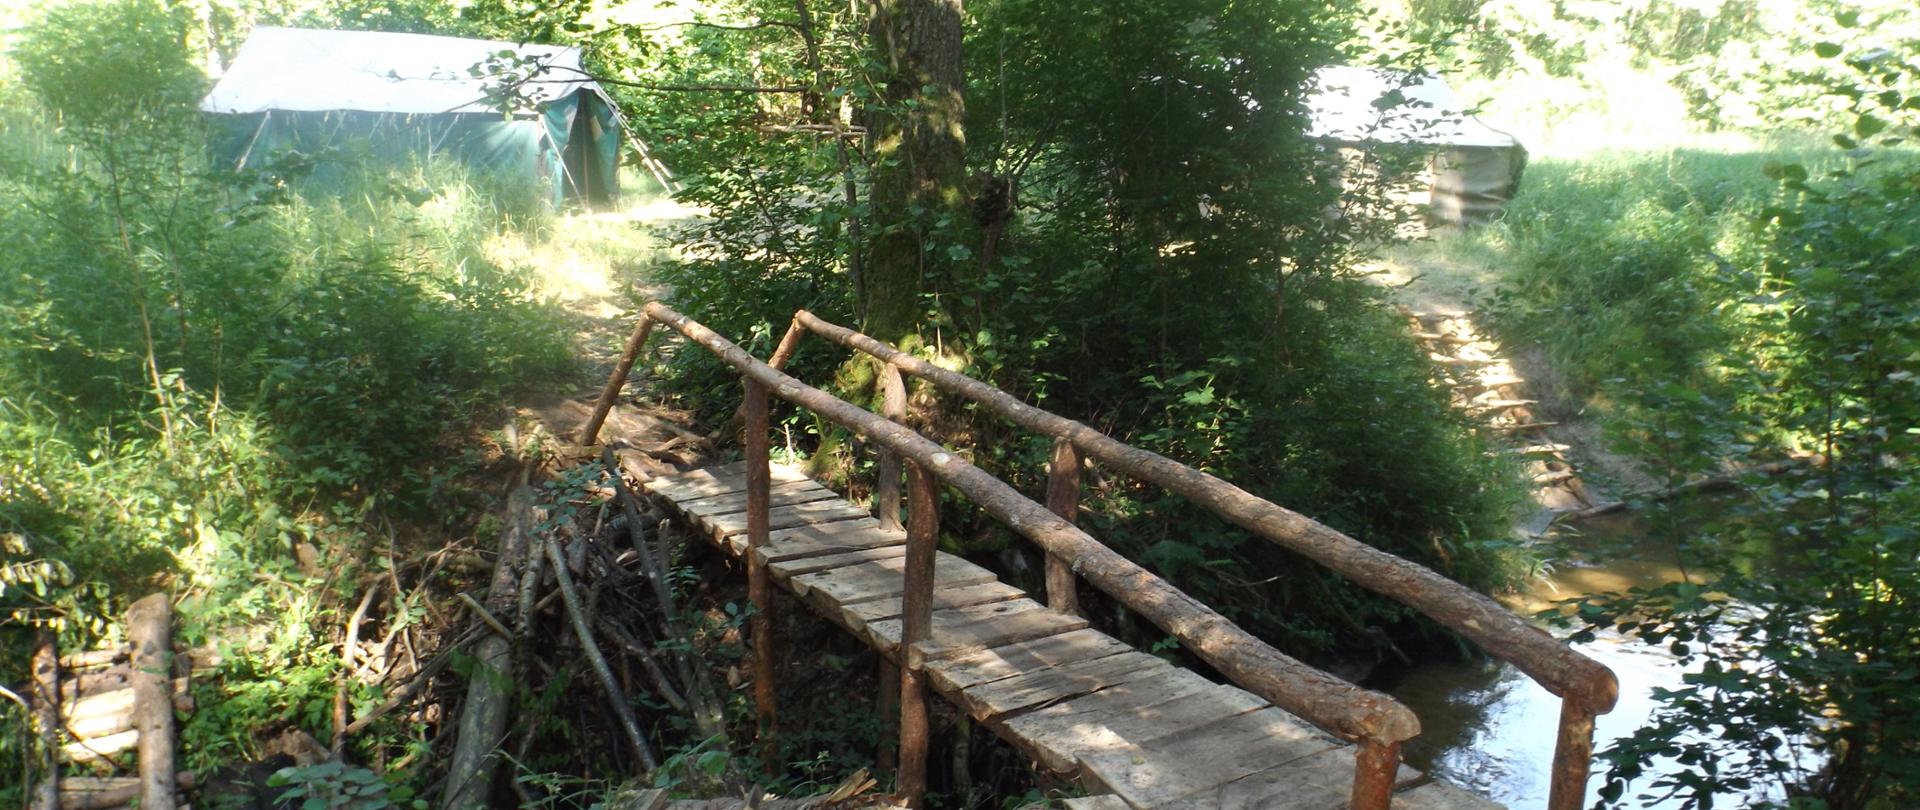 Zdjęcie przedstawia mostek prowadzący do obozu harcerskiego. Obok widać połamane drzewa i krzaki.